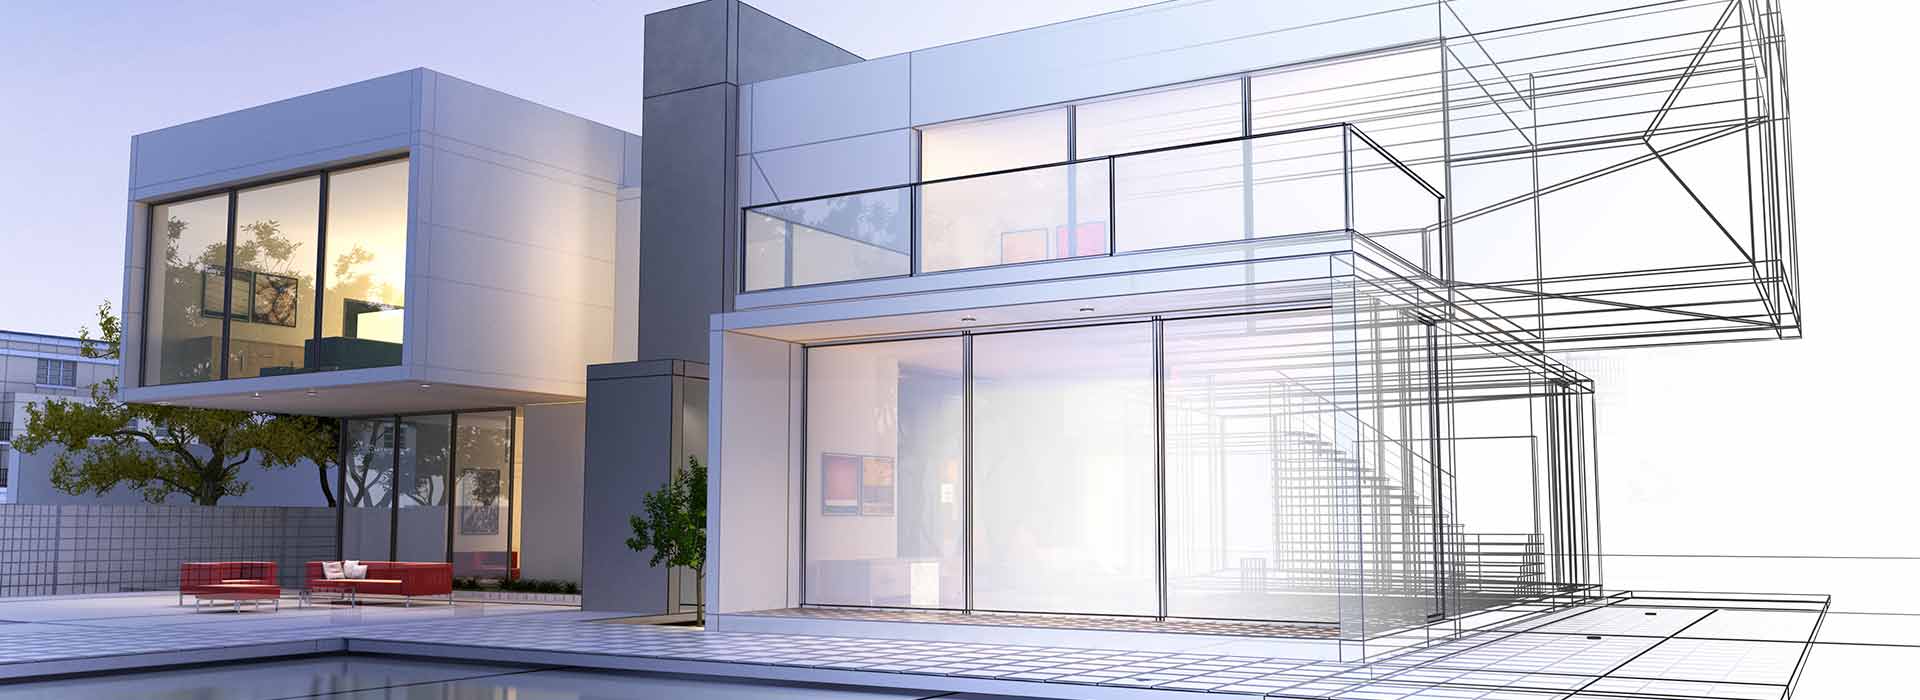 In questa immagine la visualizzazione 3D di una nuova casa. Se vuoi realizzare la tua nuova casa affidati a Di Tomaso Building, Impresa Costruzione Edile.